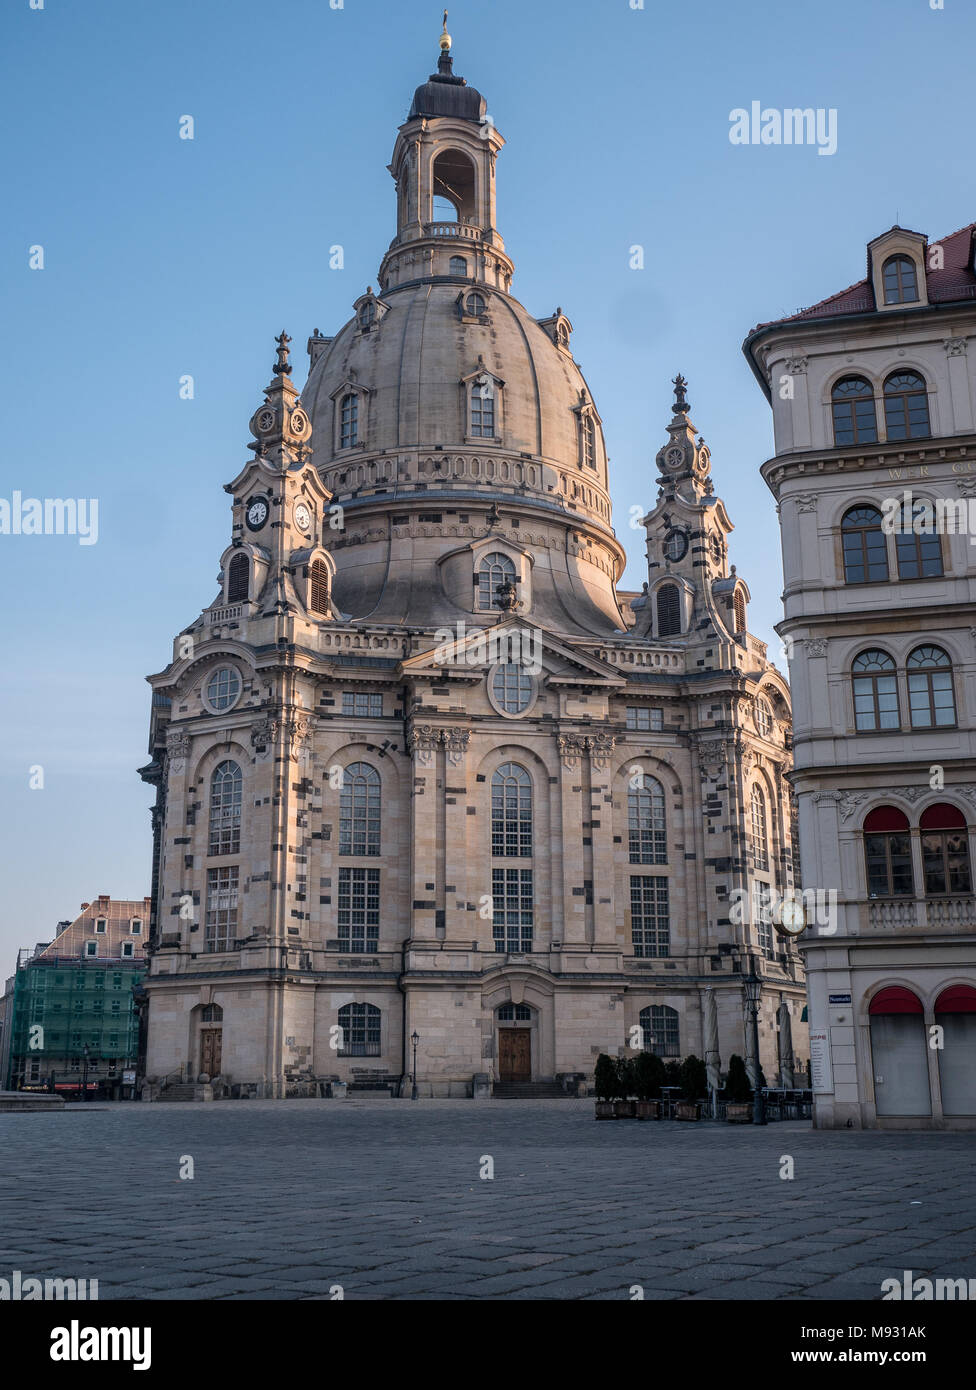 Eglise / l'église Notre-Dame (Frauenkirche) et statue de Luther au petit matin, Dresde, Saxe, Allemagne Banque D'Images